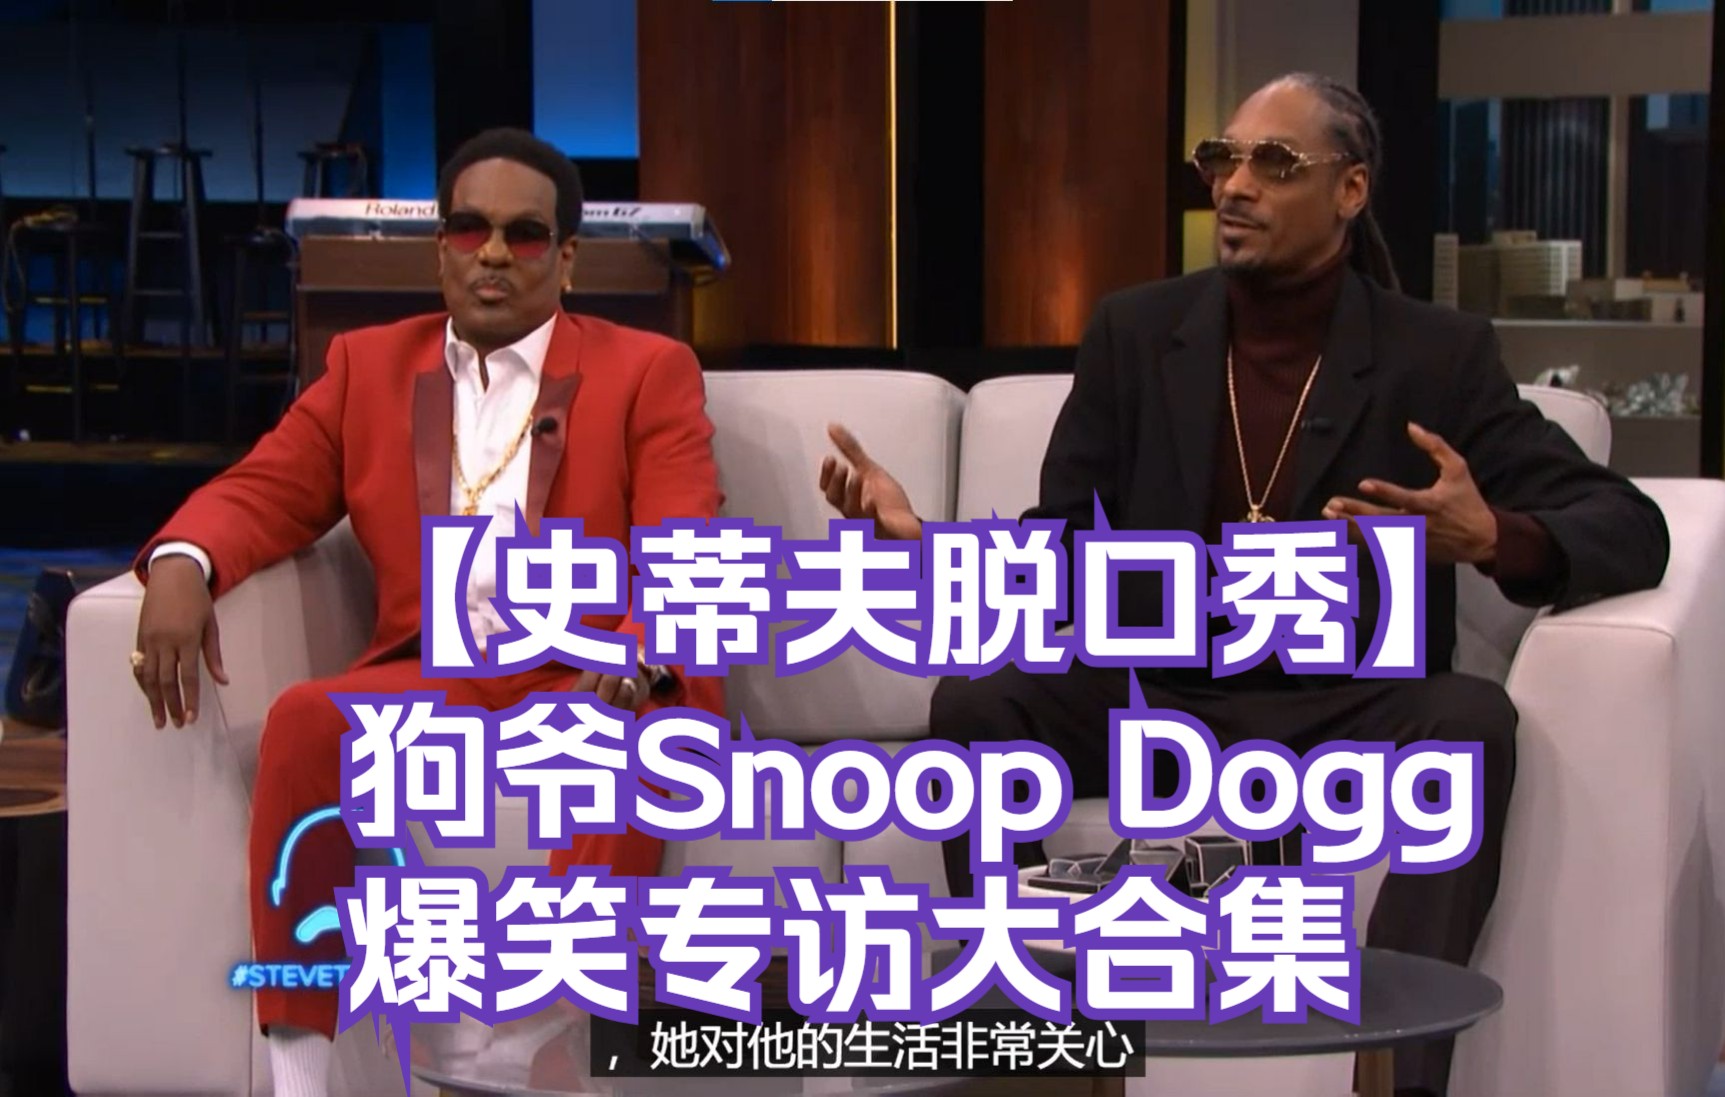 【史蒂夫脱口秀】狗爷Snoop Dogg爆笑专访大合集